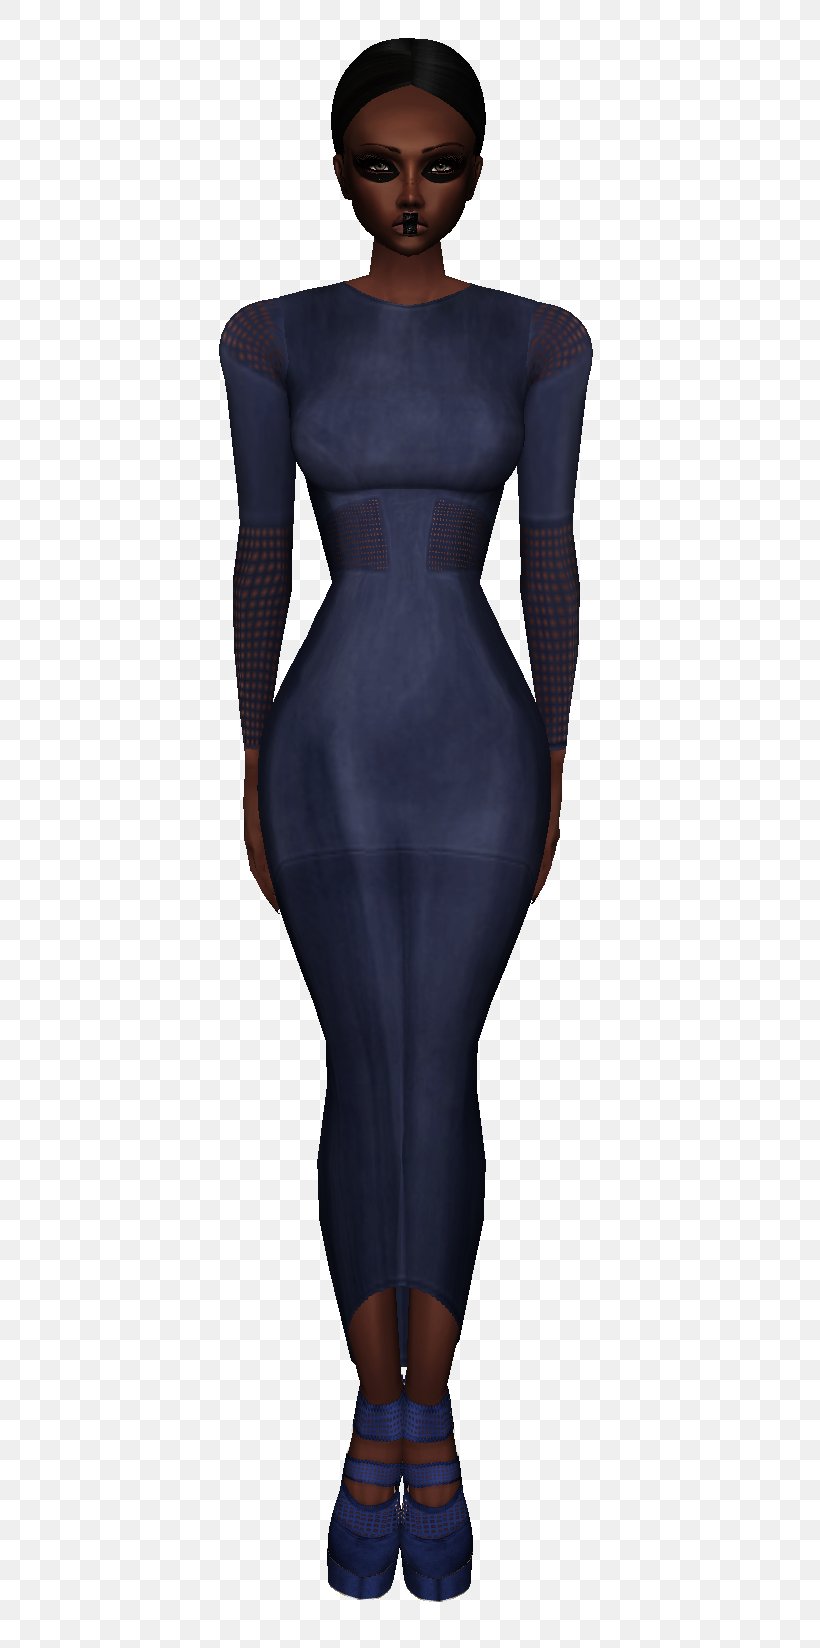 Shoulder Dress Electric Blue, PNG, 448x1648px, Shoulder, Dress, Electric Blue, Fashion Design, Joint Download Free